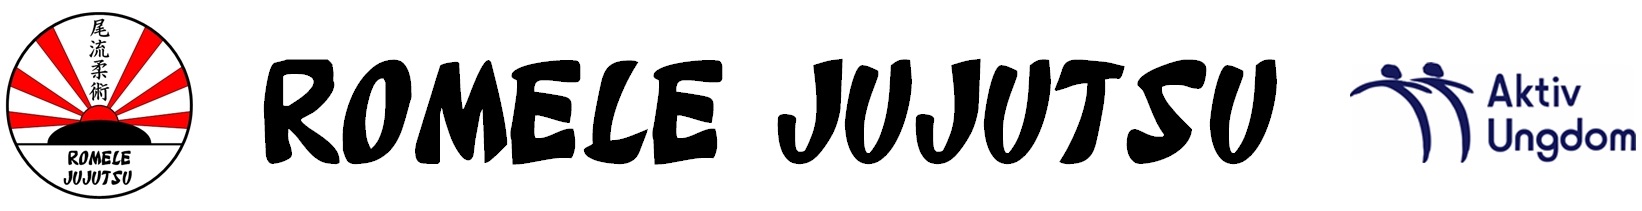 Romele JuJutsu Logo